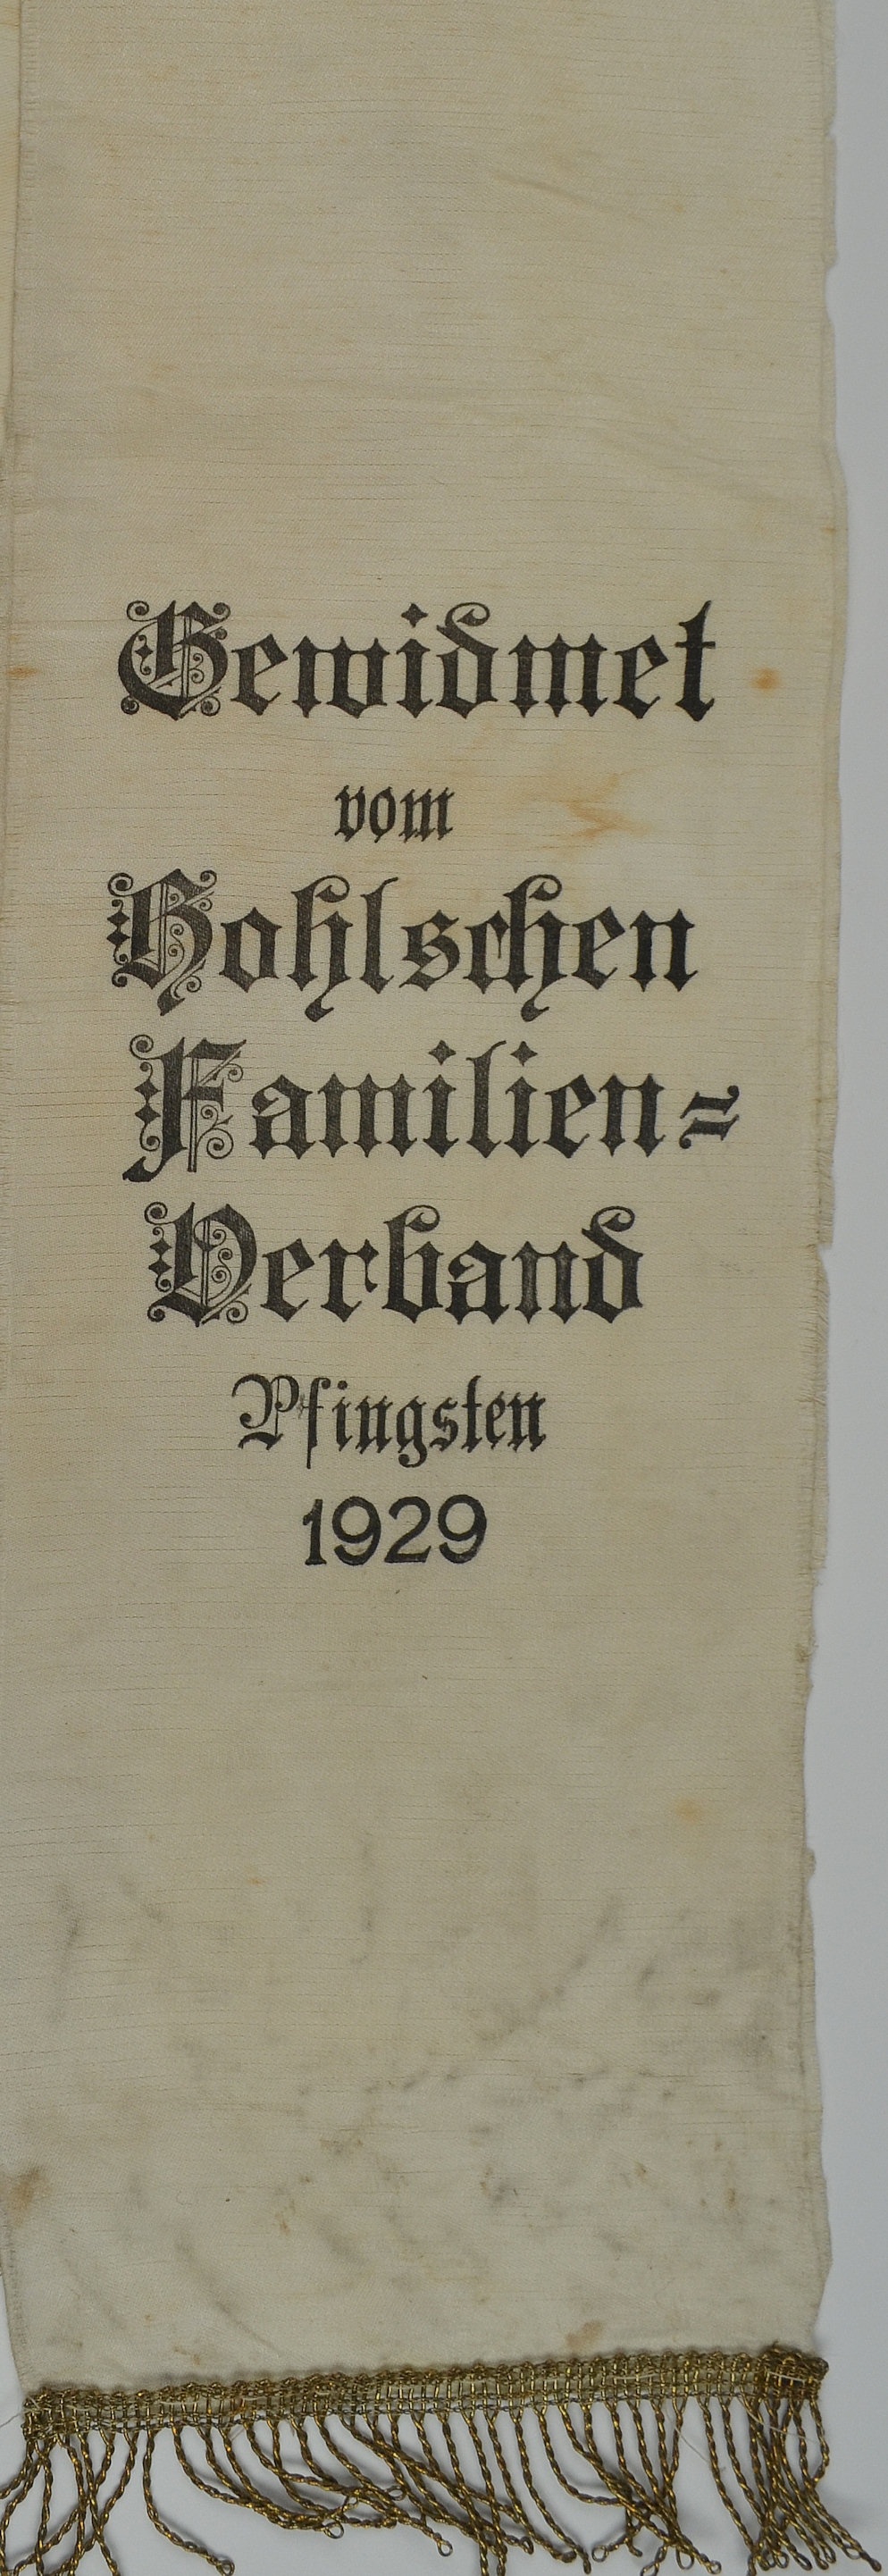 Gewidmet vom Bohlschen Familien-Verband Pfingsten 1929 (Museum Weißenfels - Schloss Neu-Augustusburg CC BY-NC-SA)